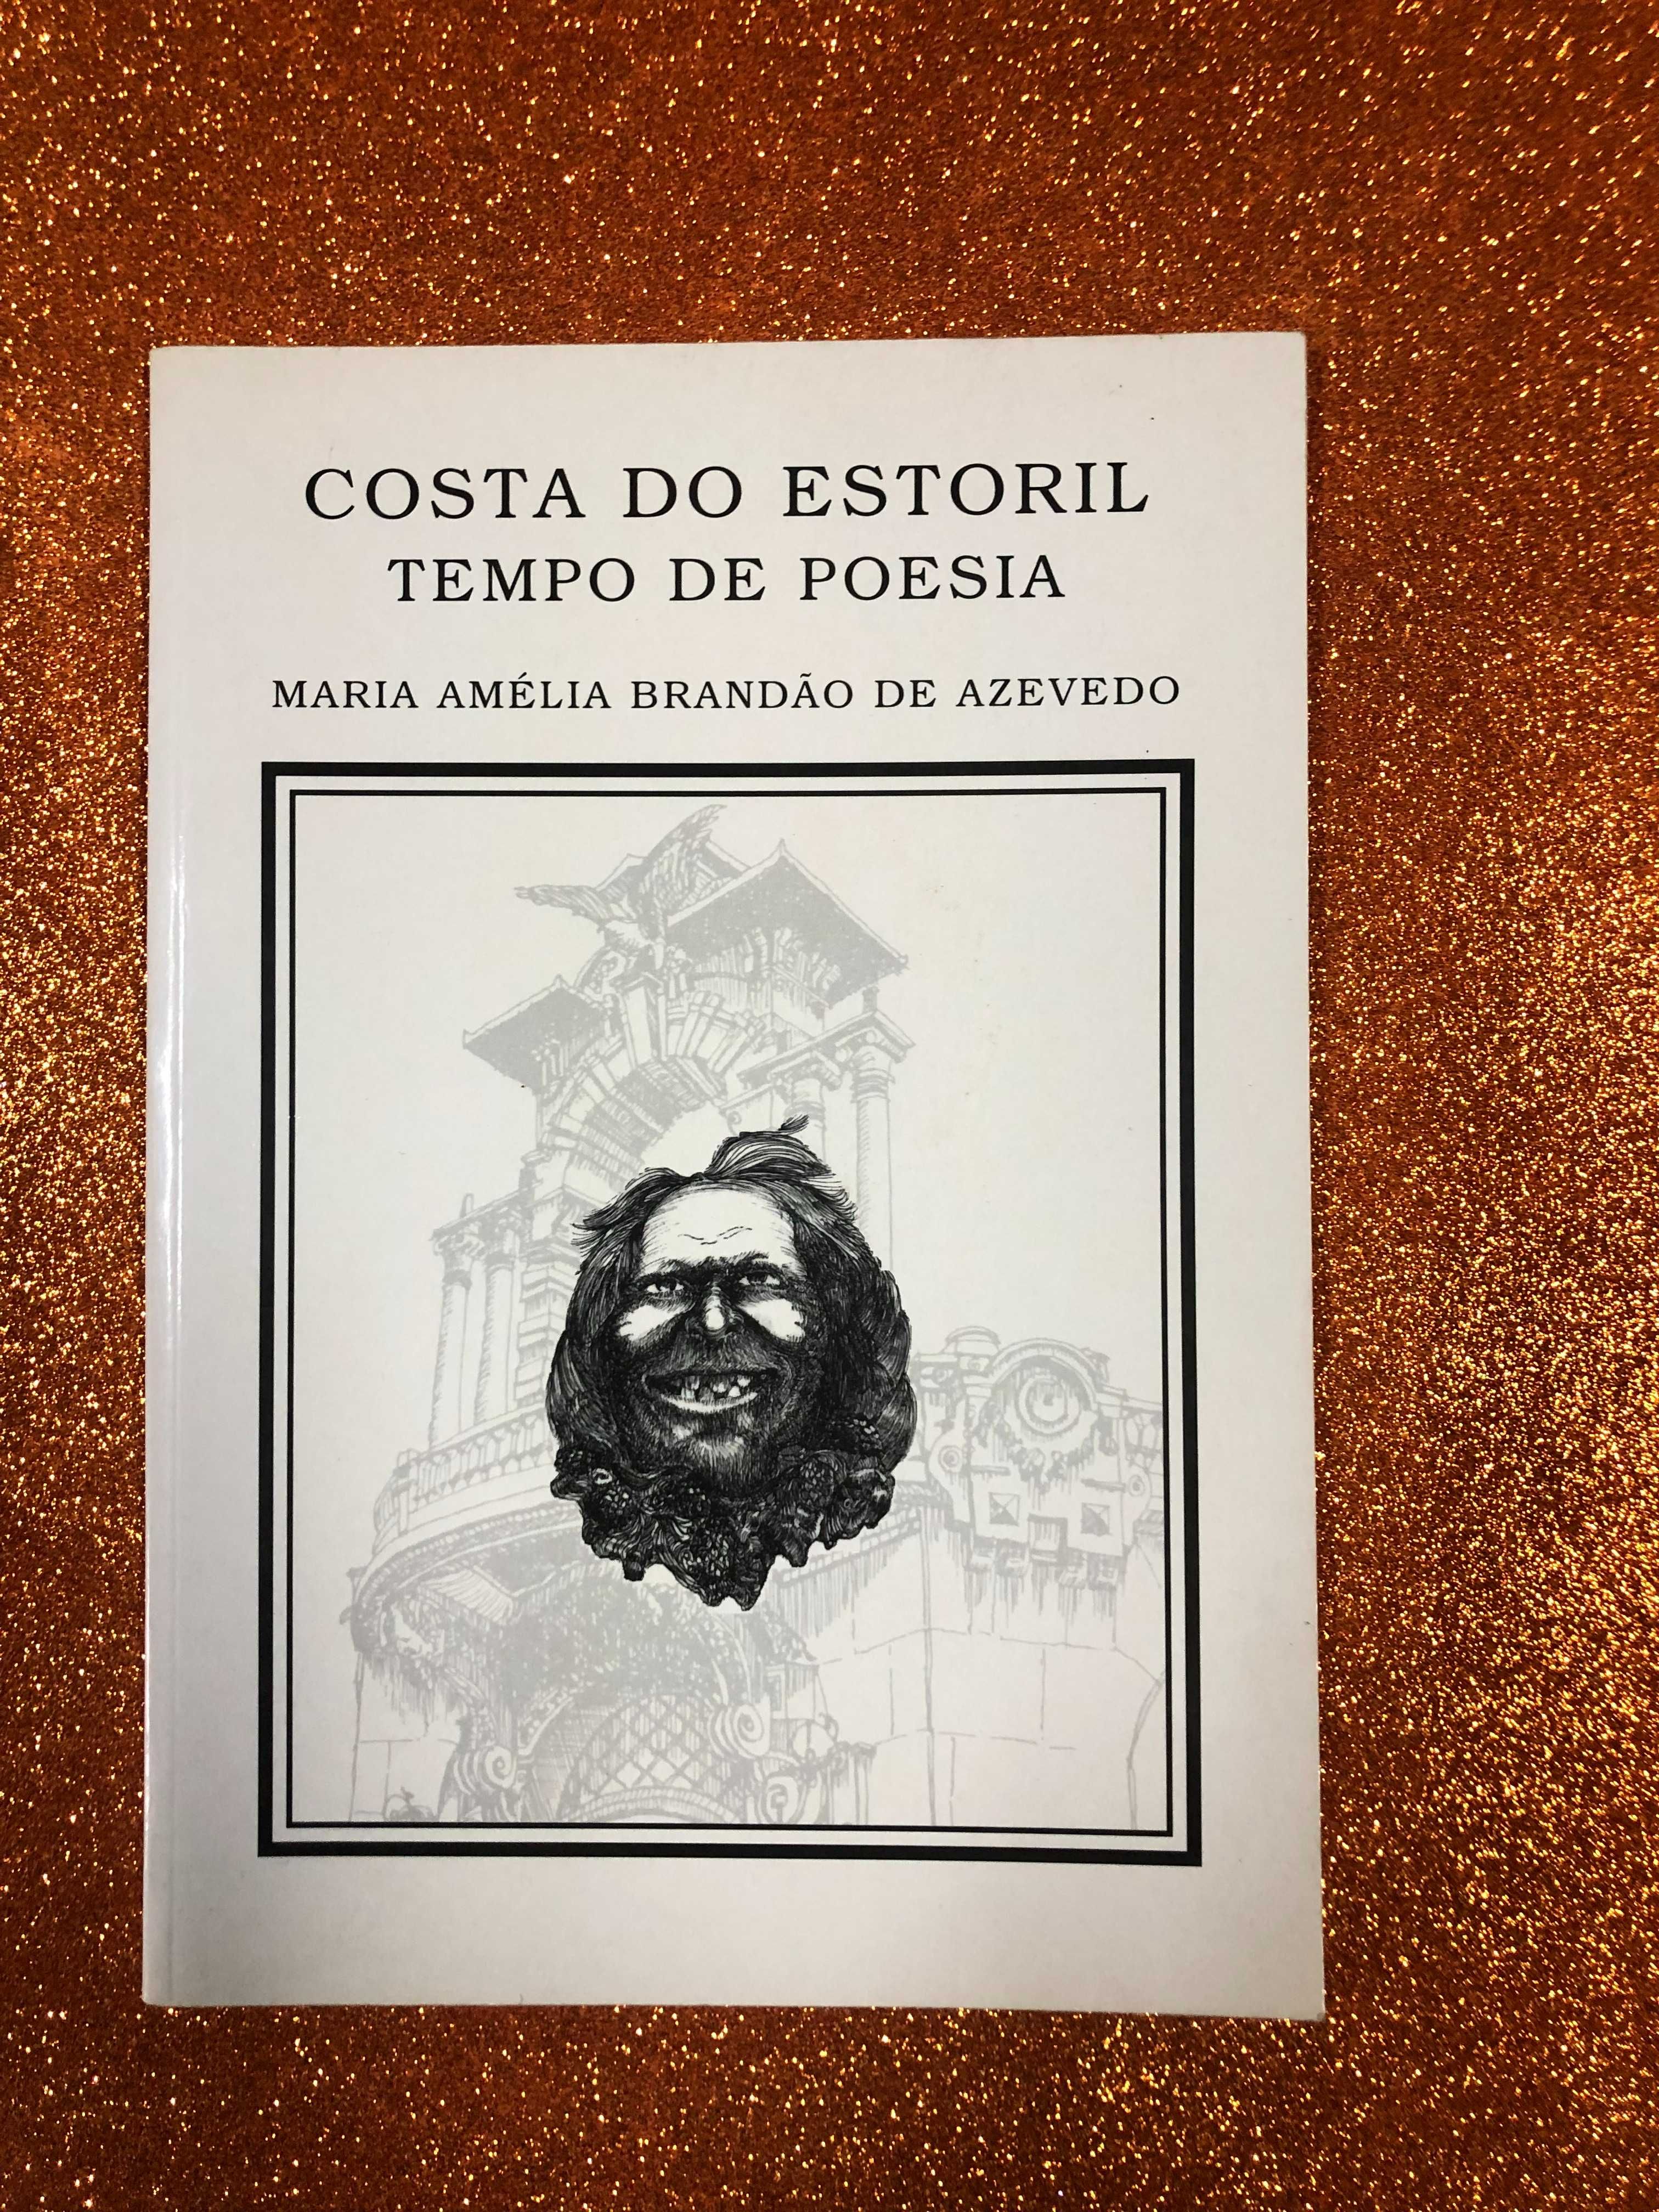 Costa do Estoril...tempo de poesia - Maria Amélia Brandão de Azevedo